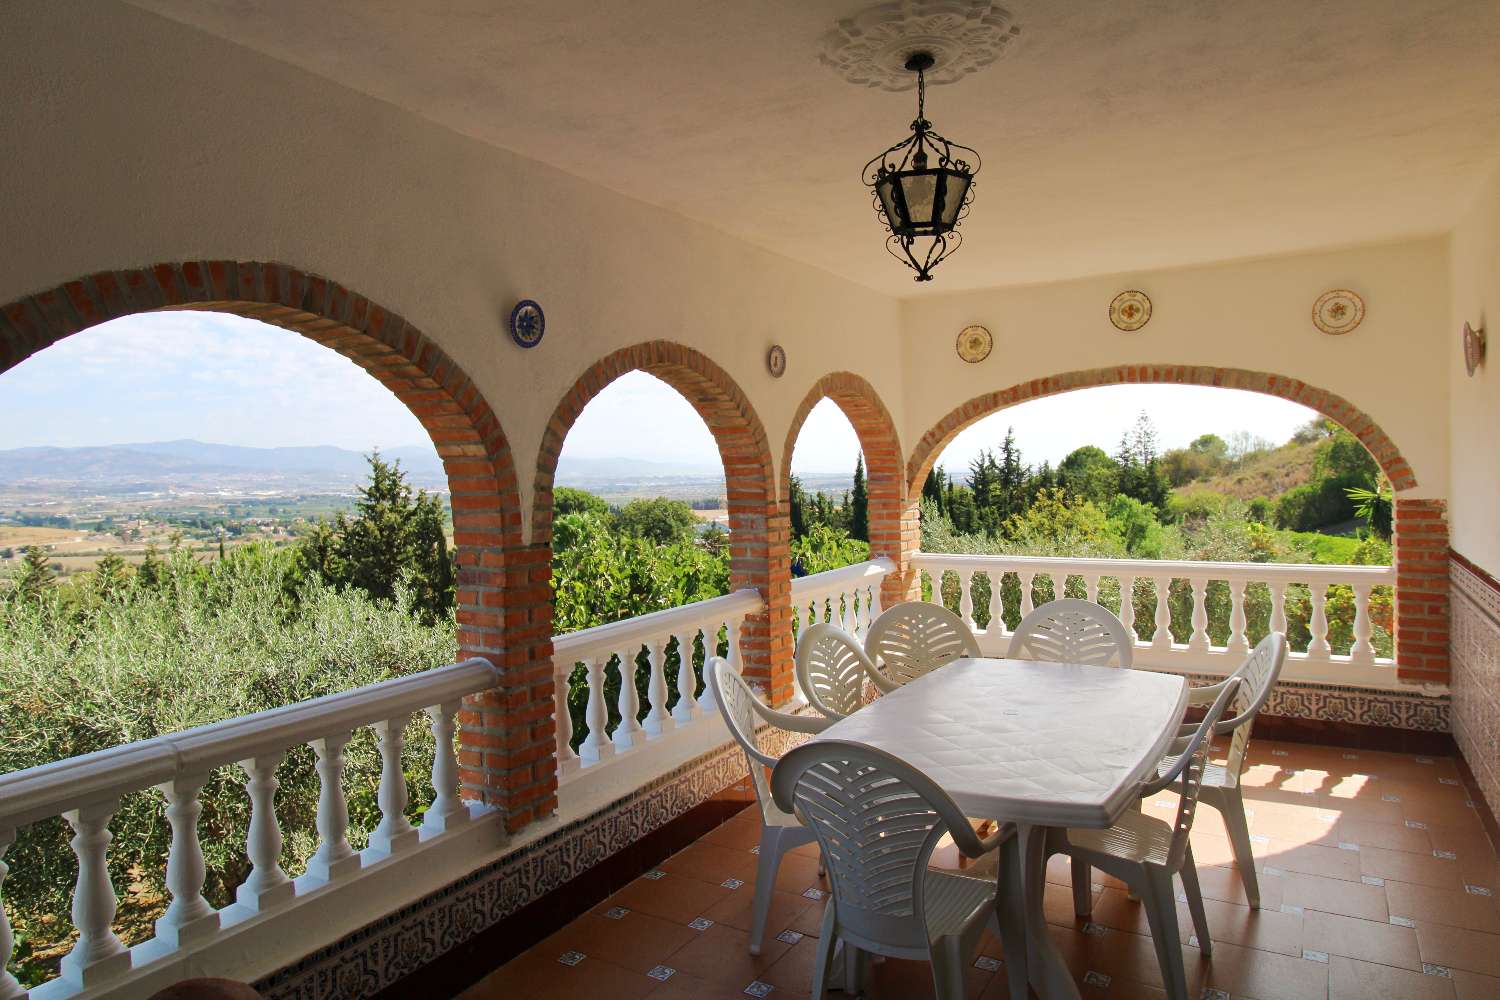 Villa with spectacular views located in Lagar de las Pitas.